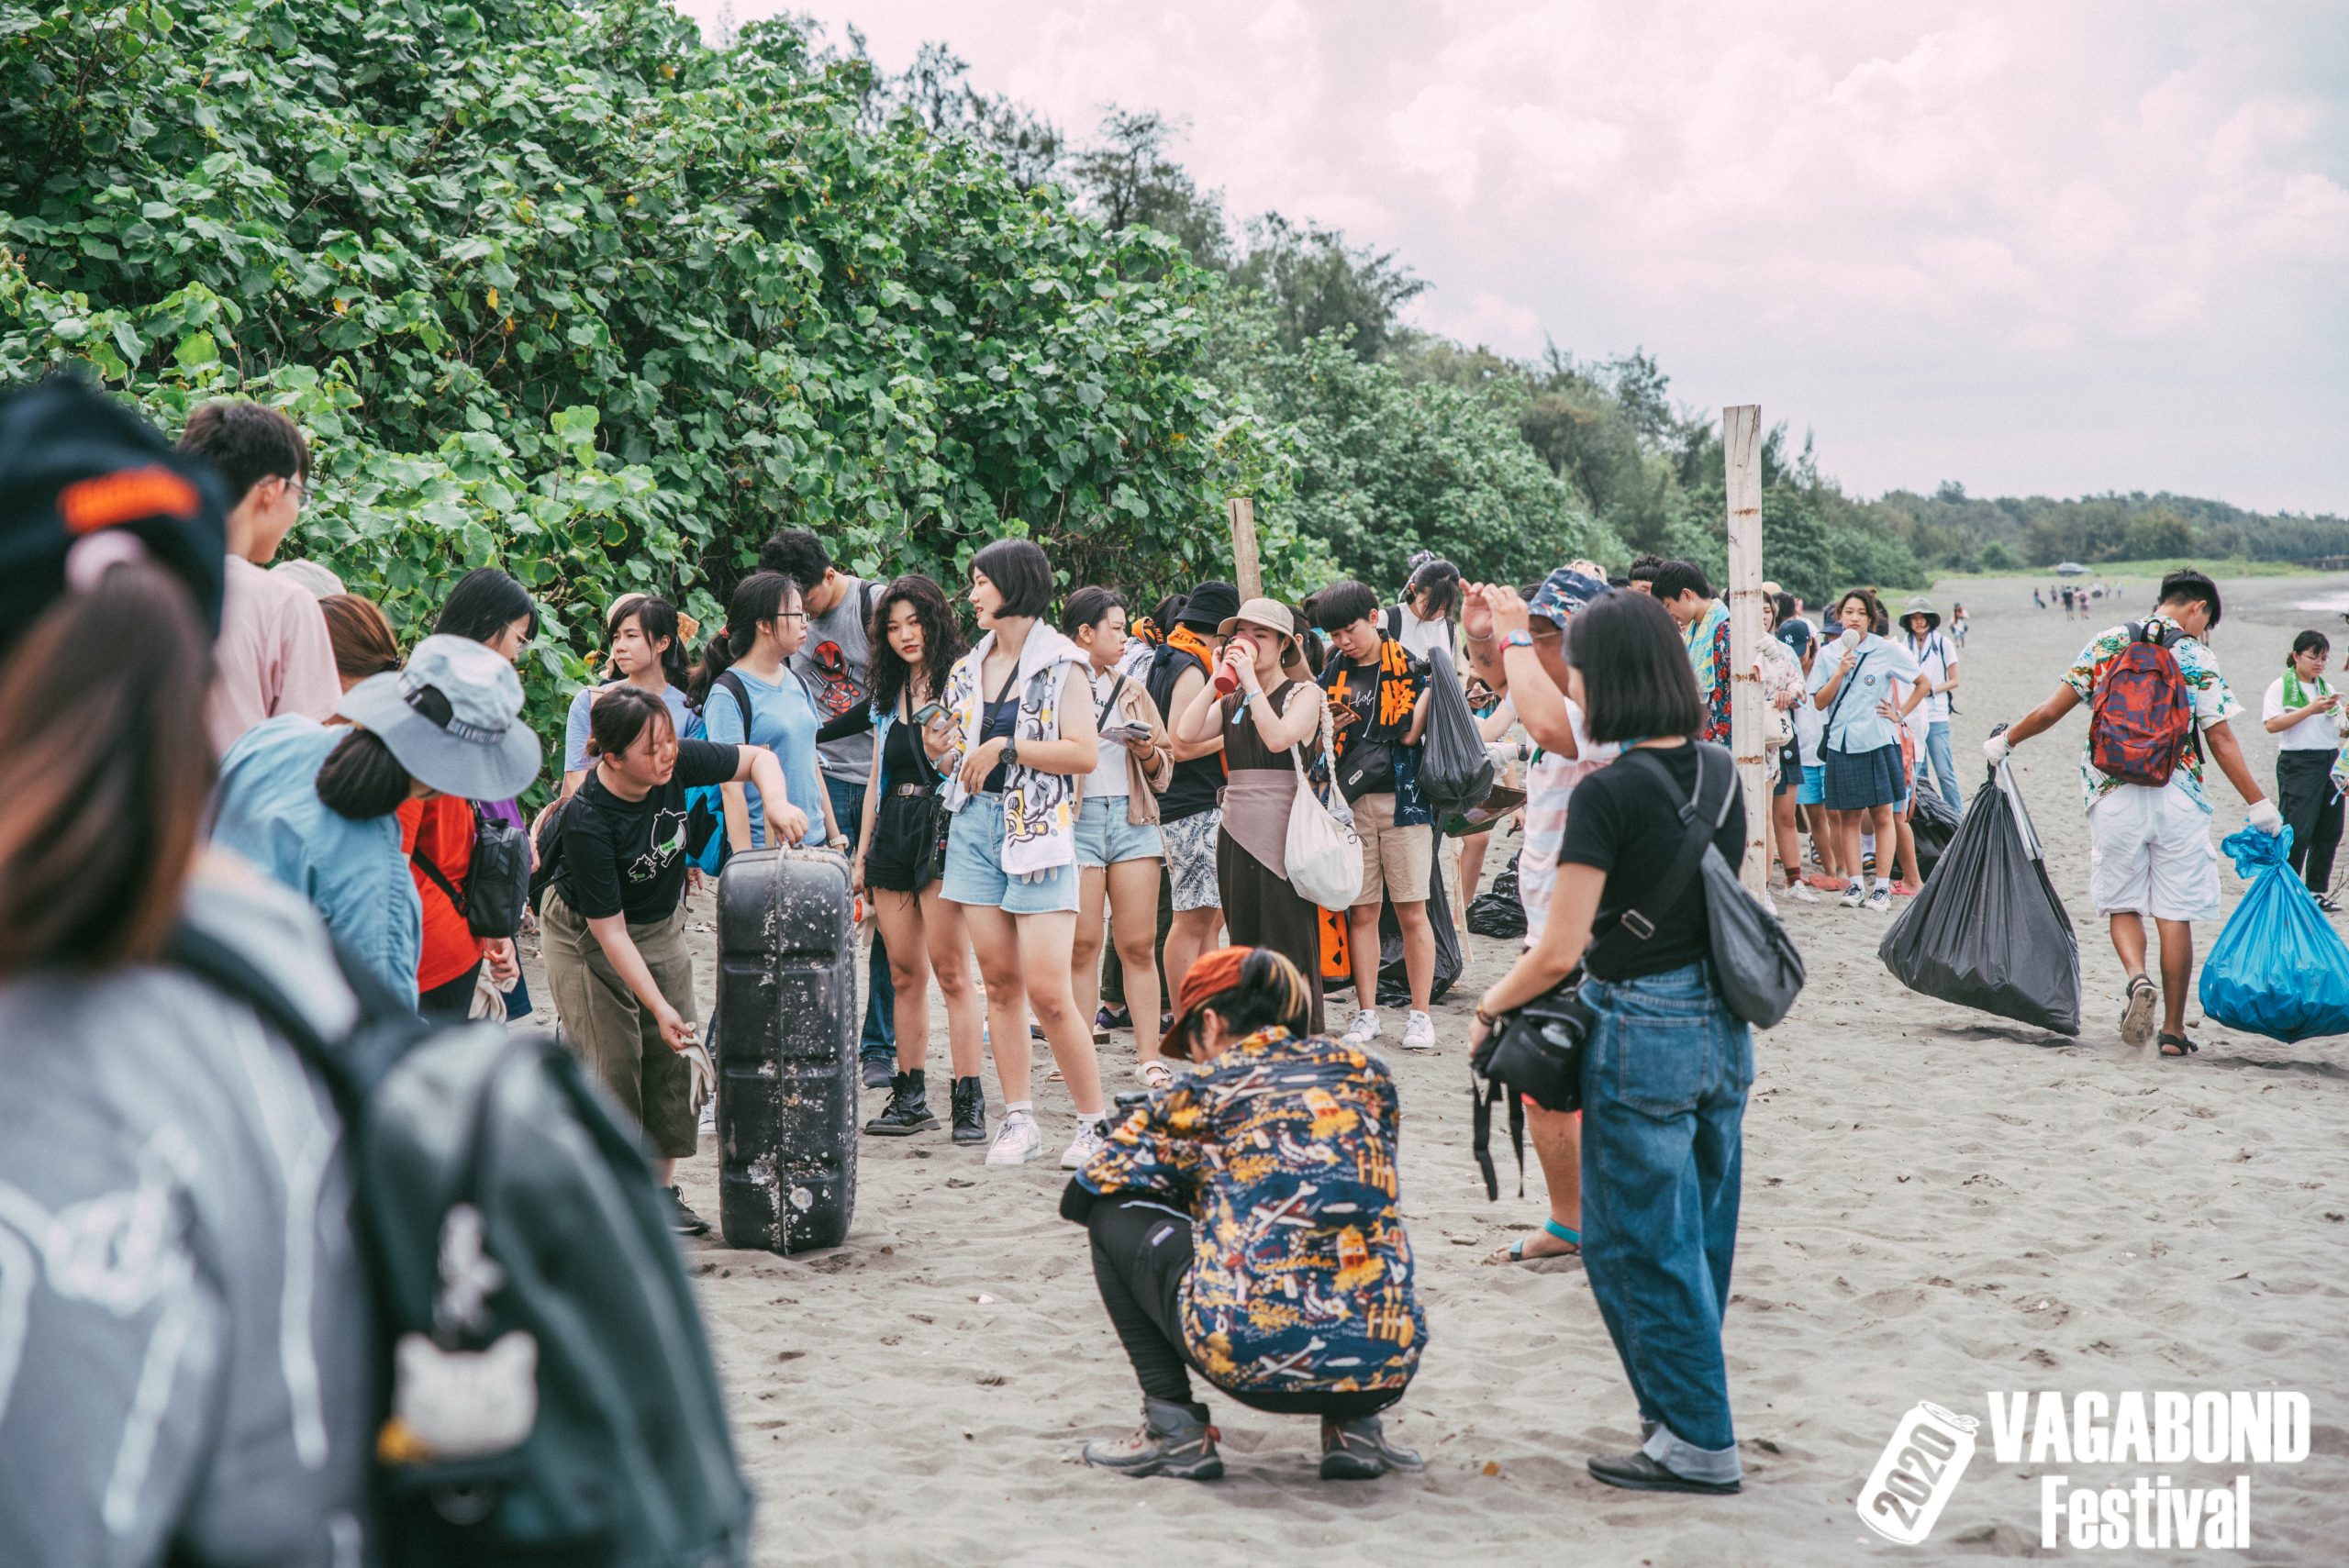 獨立音樂樂迷參與音樂祭的同時不忘環境永續的重要，齊心協力參與淨灘活動